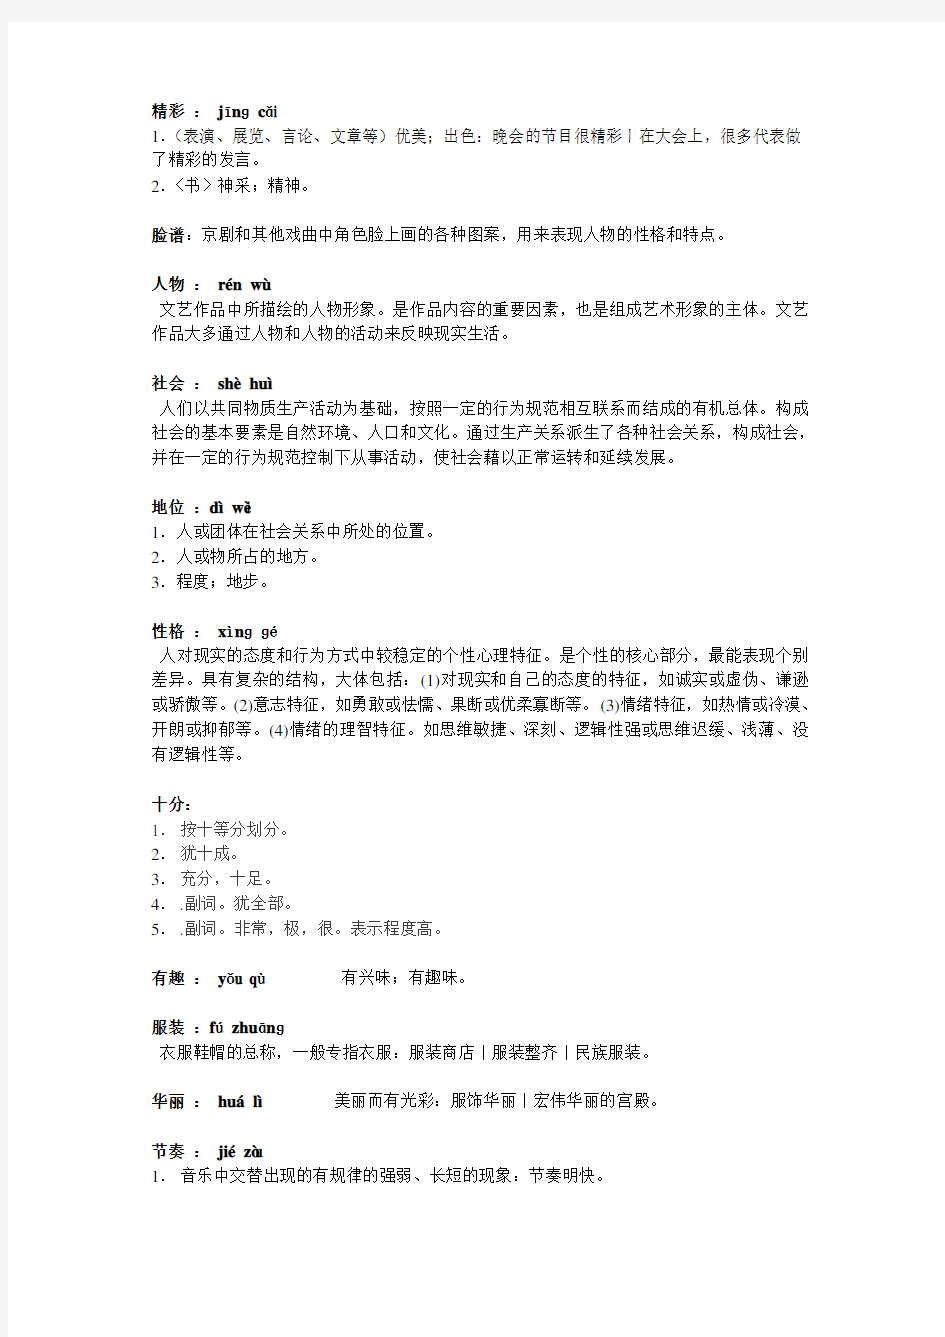 初级汉语教程第二册教案